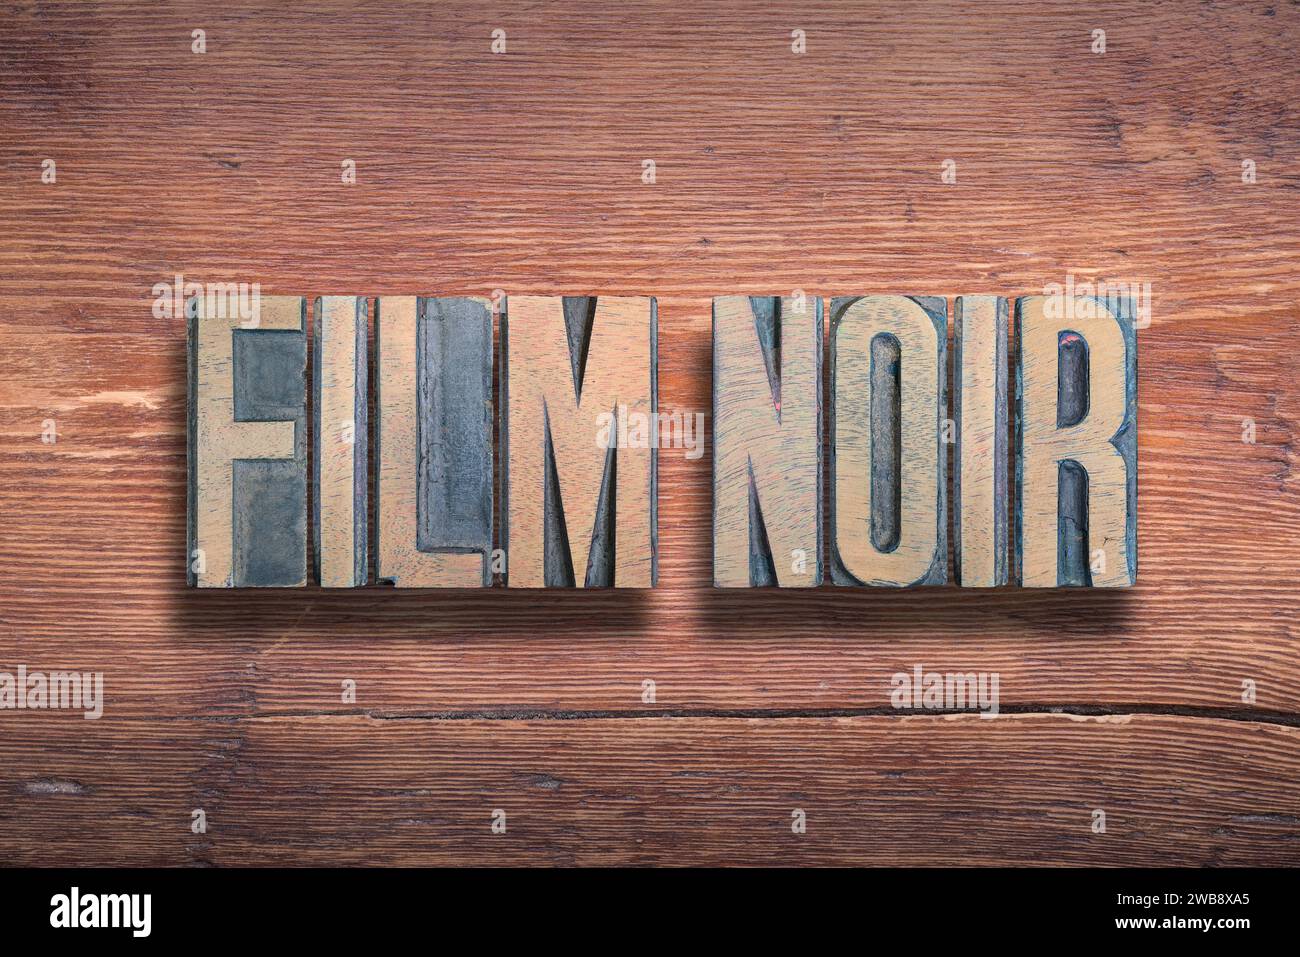 Film noir, una frase francese comunemente usata che significa "film nero", un genere di film a tema scuro, combinati su una superficie in legno verniciato d'epoca Foto Stock